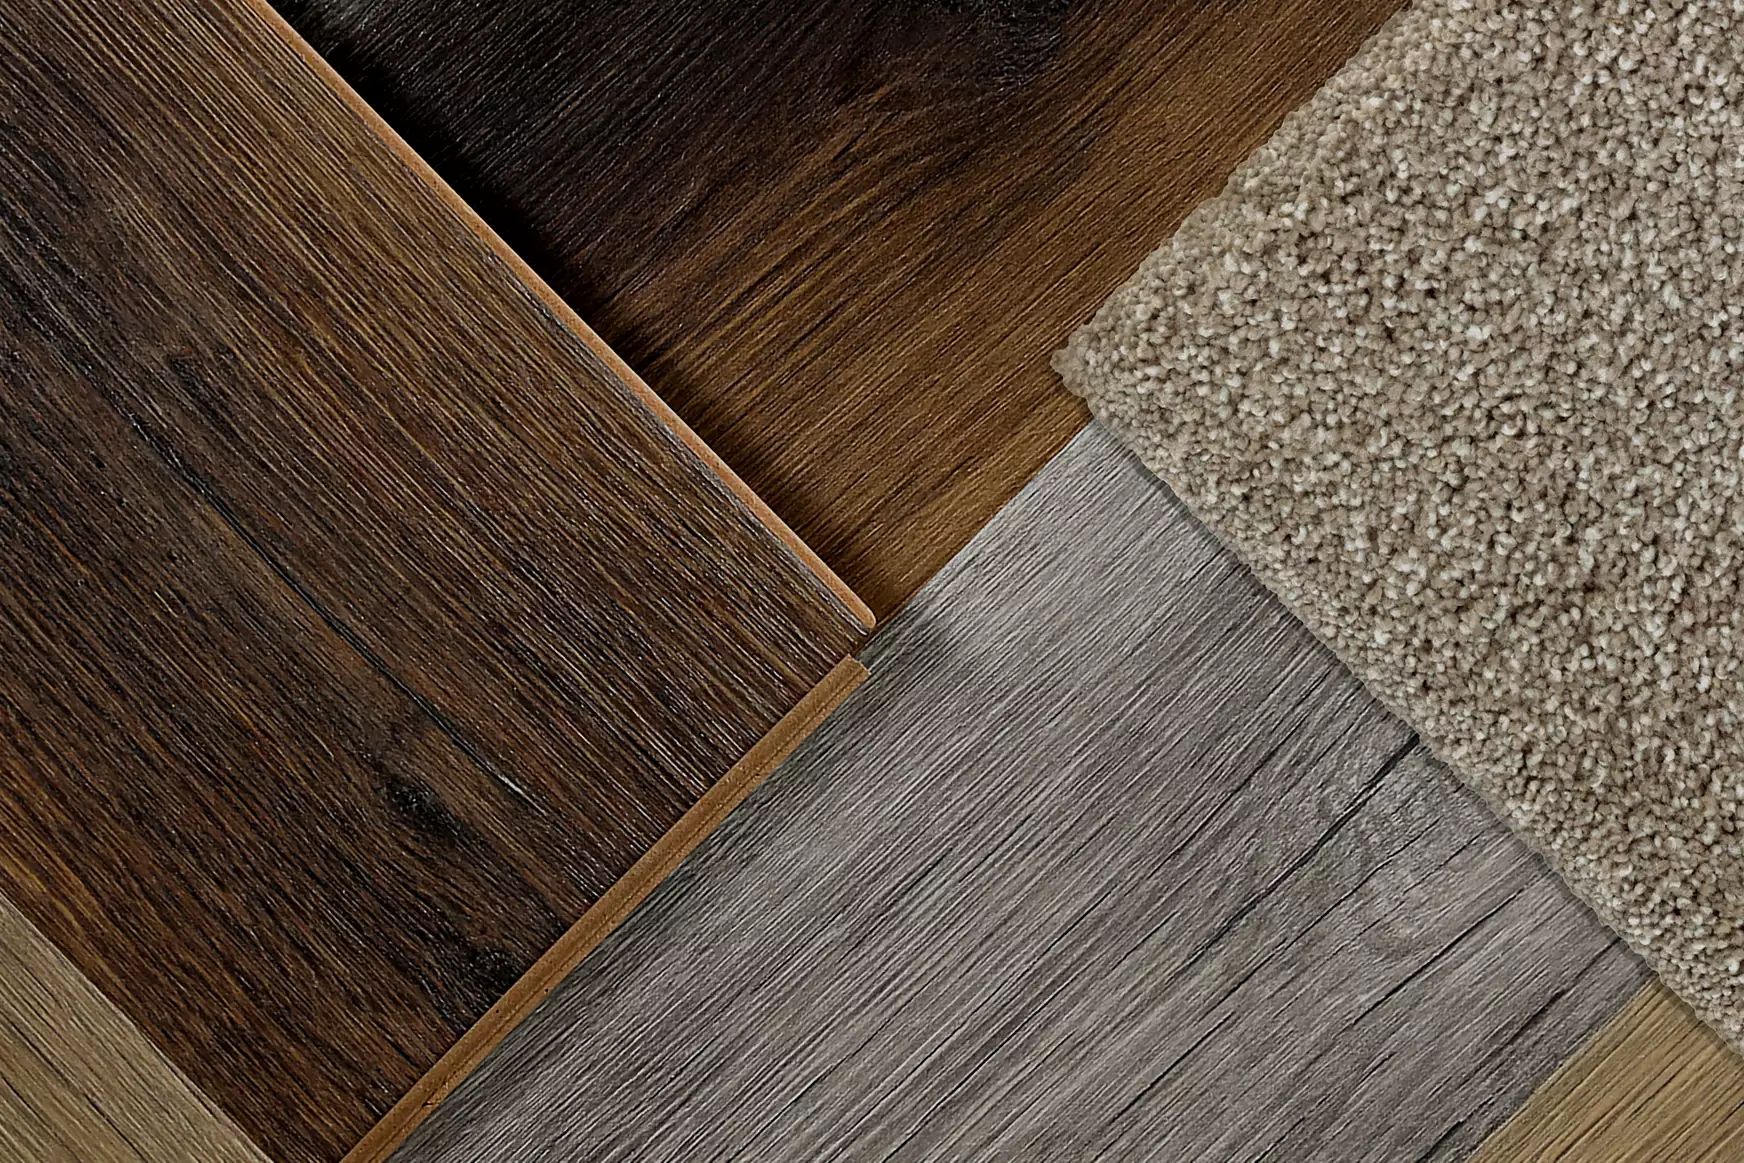 Samples of Medium, Medium-Dark, Grey, and carpet flooring.